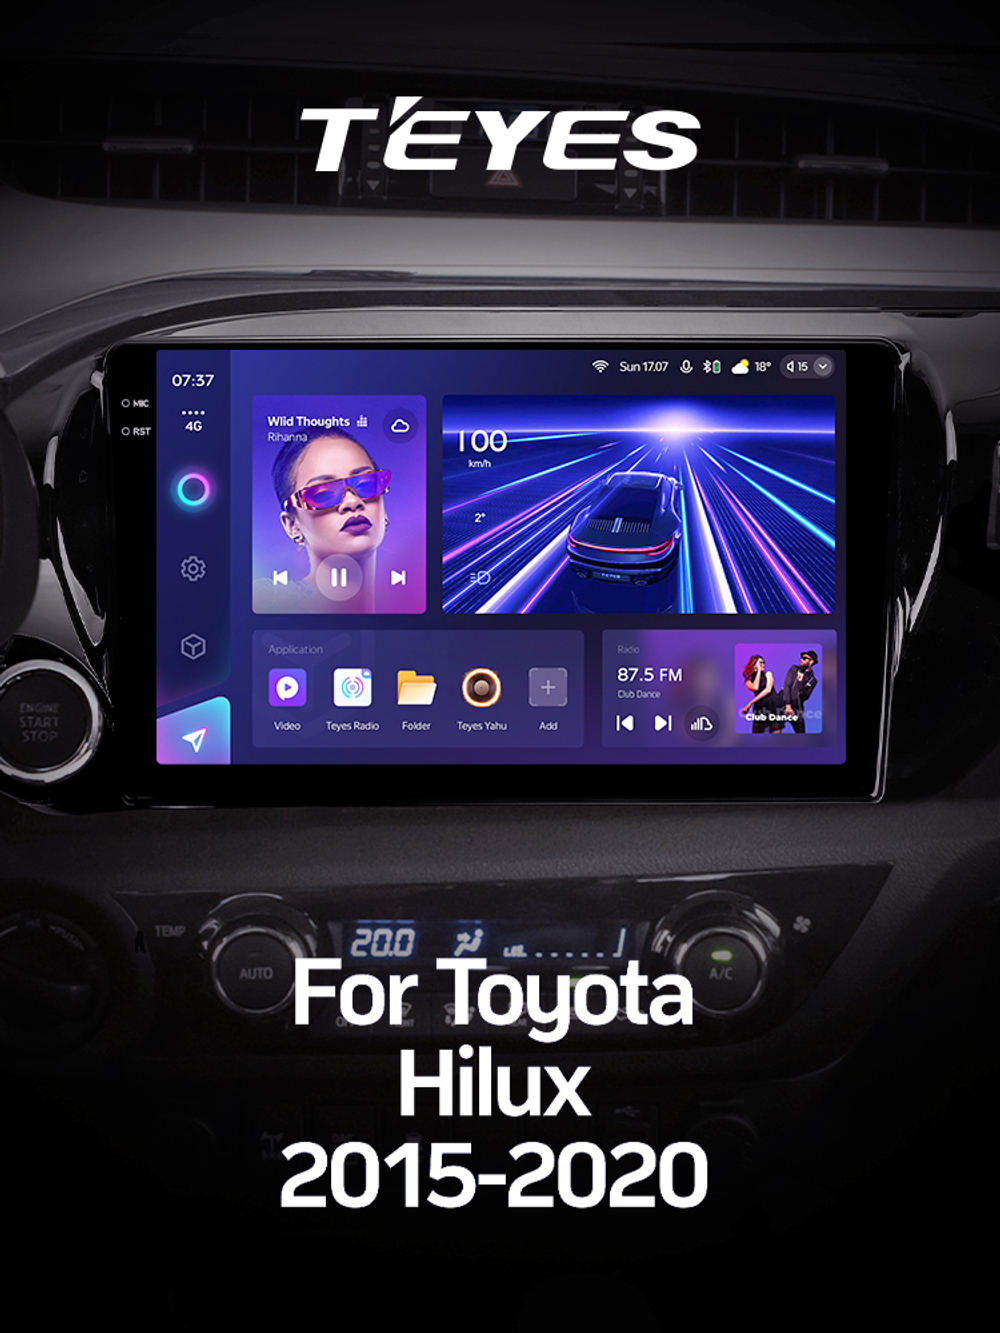 Teyes CC3 2K 10,2"для Toyota Hilux 2015-2020